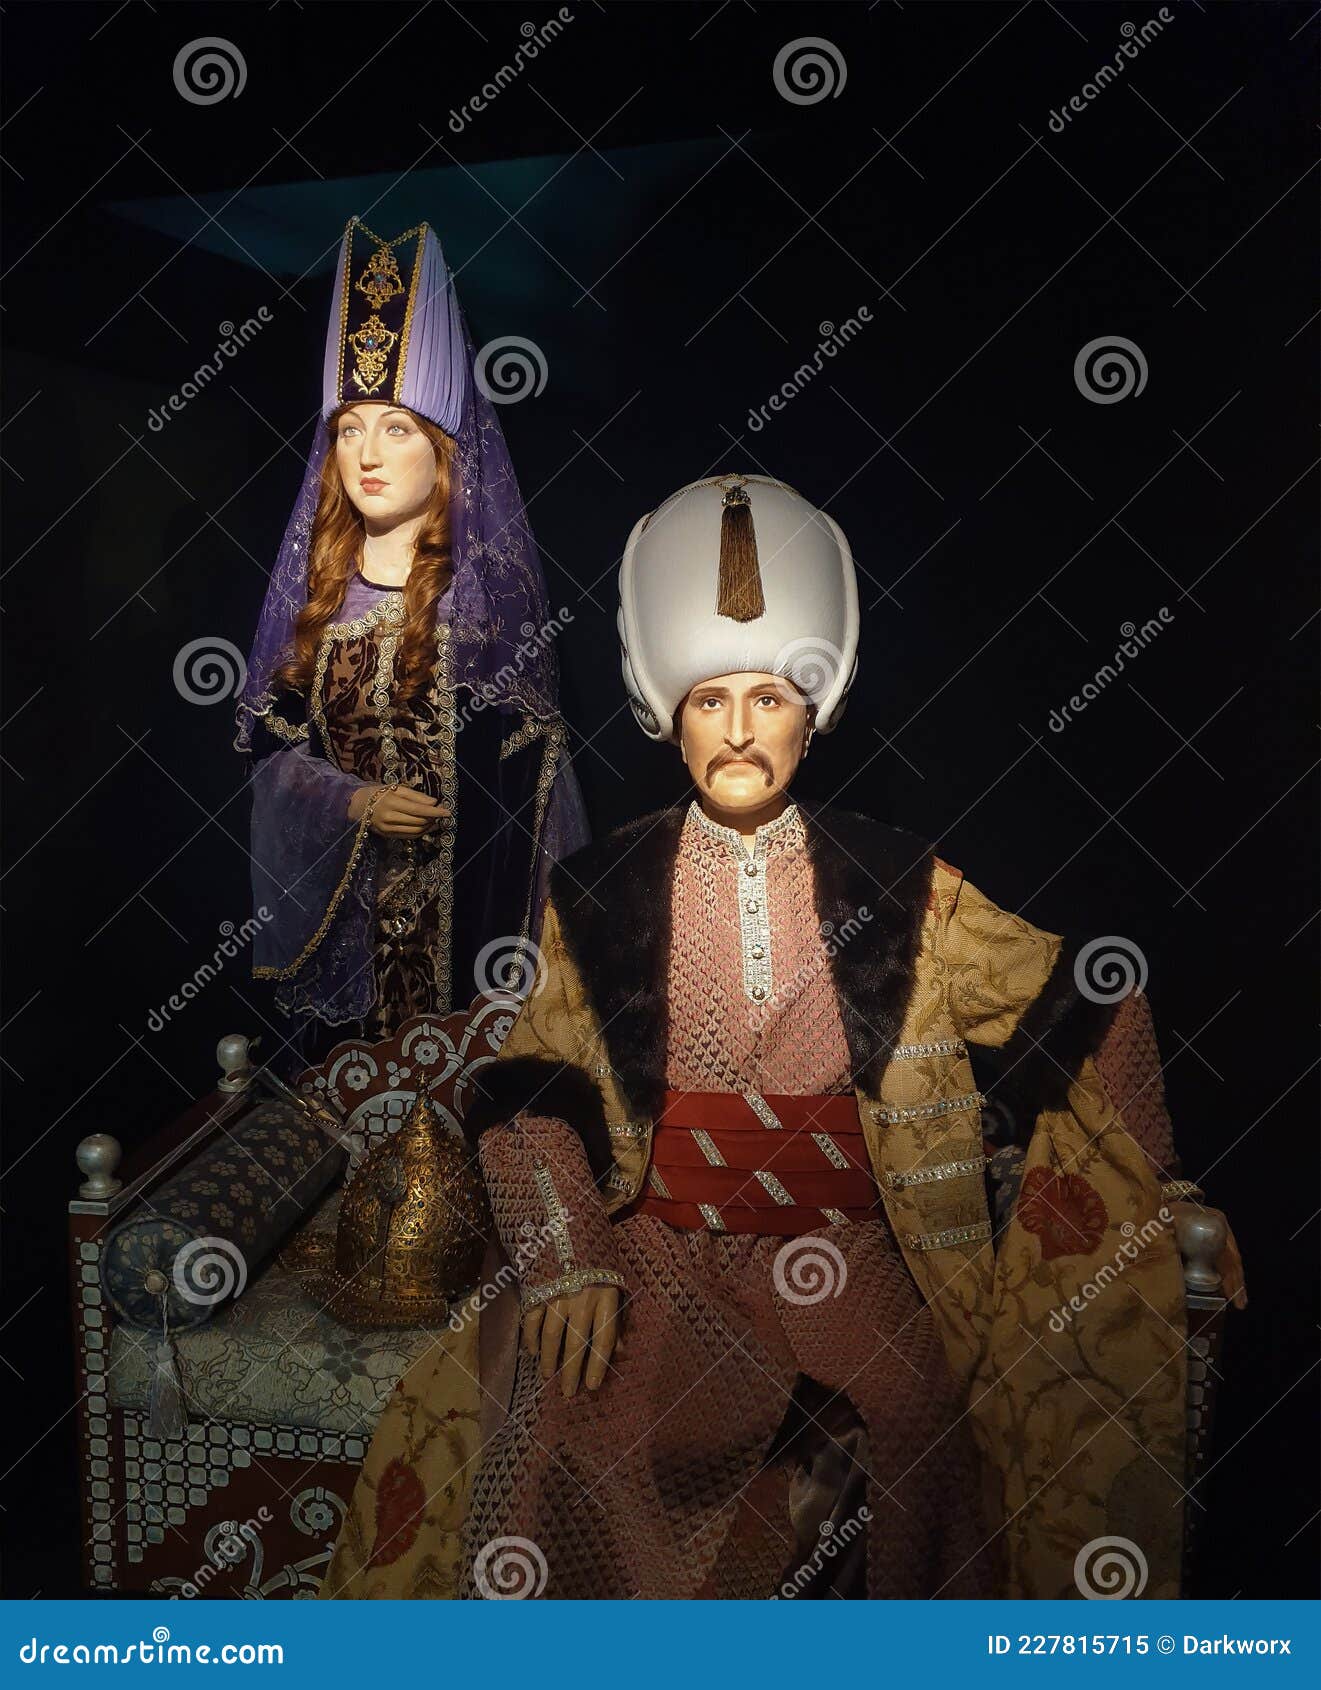 Sultan suleiman